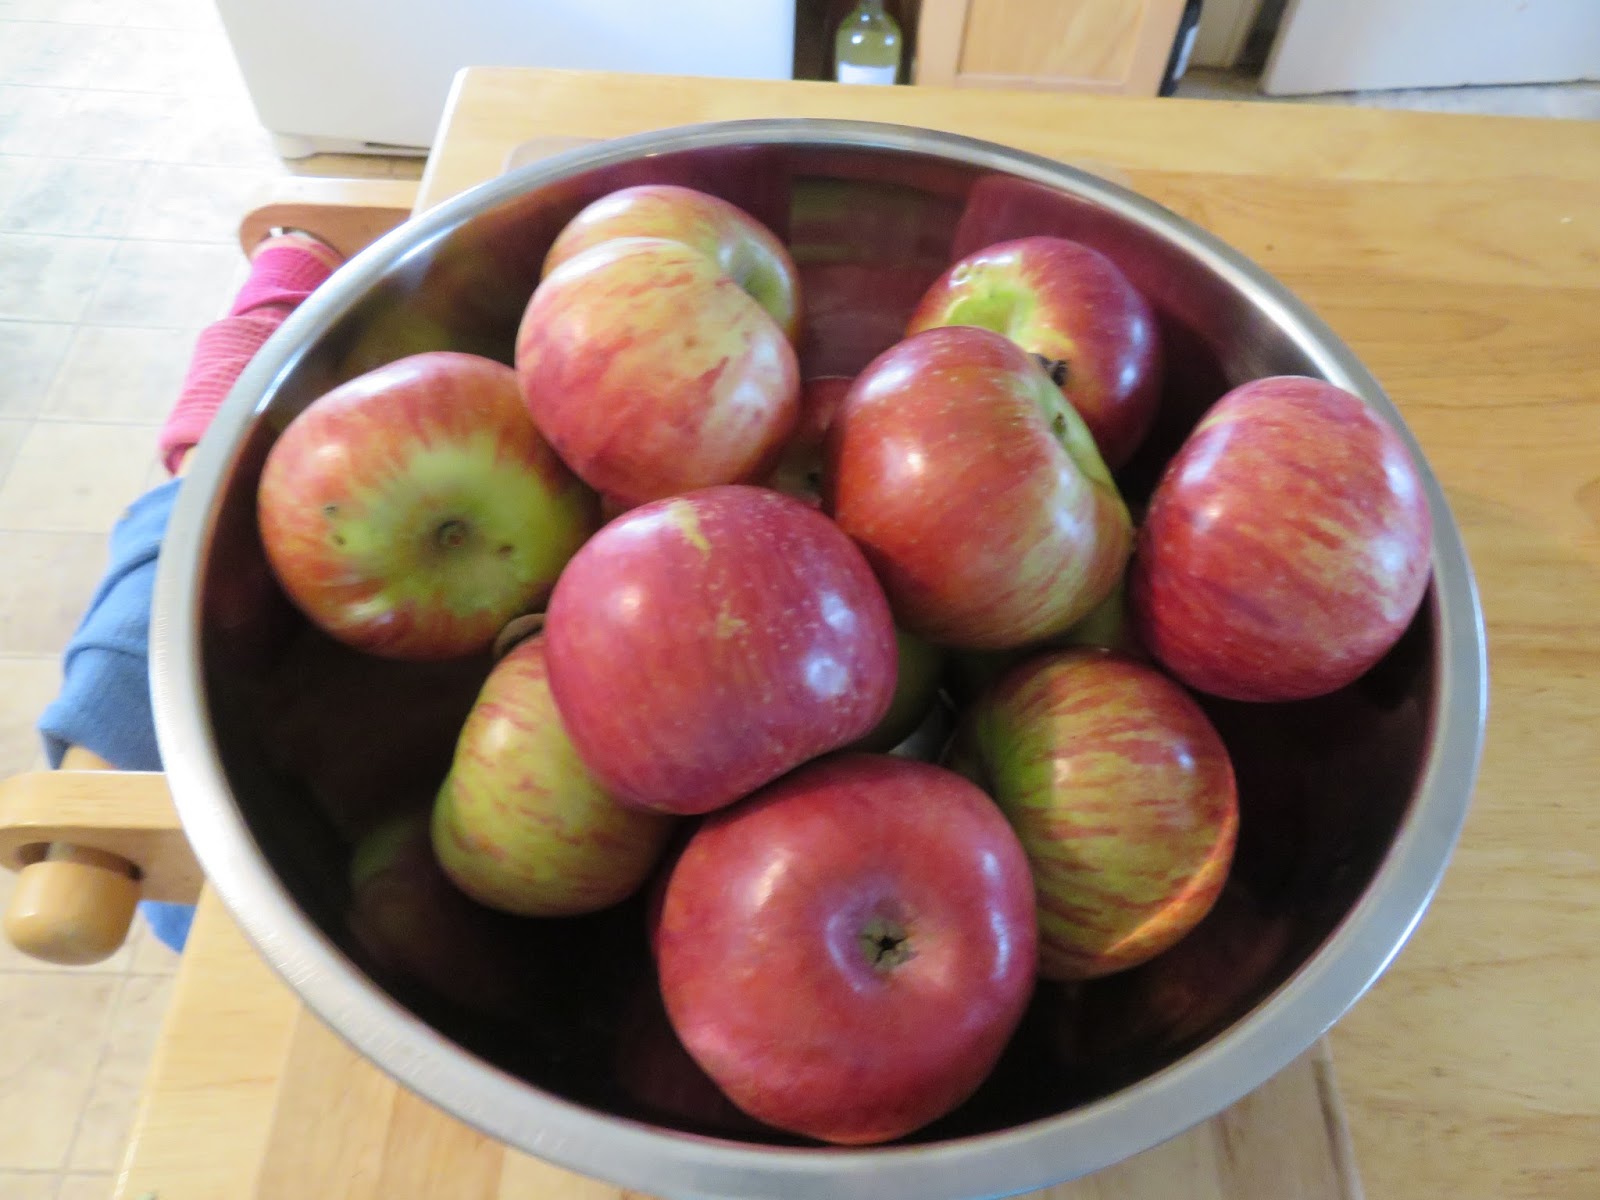 Peaches Dollhouse Miniature Fruit Basket Filled Apples Pares & More.. Oranges 